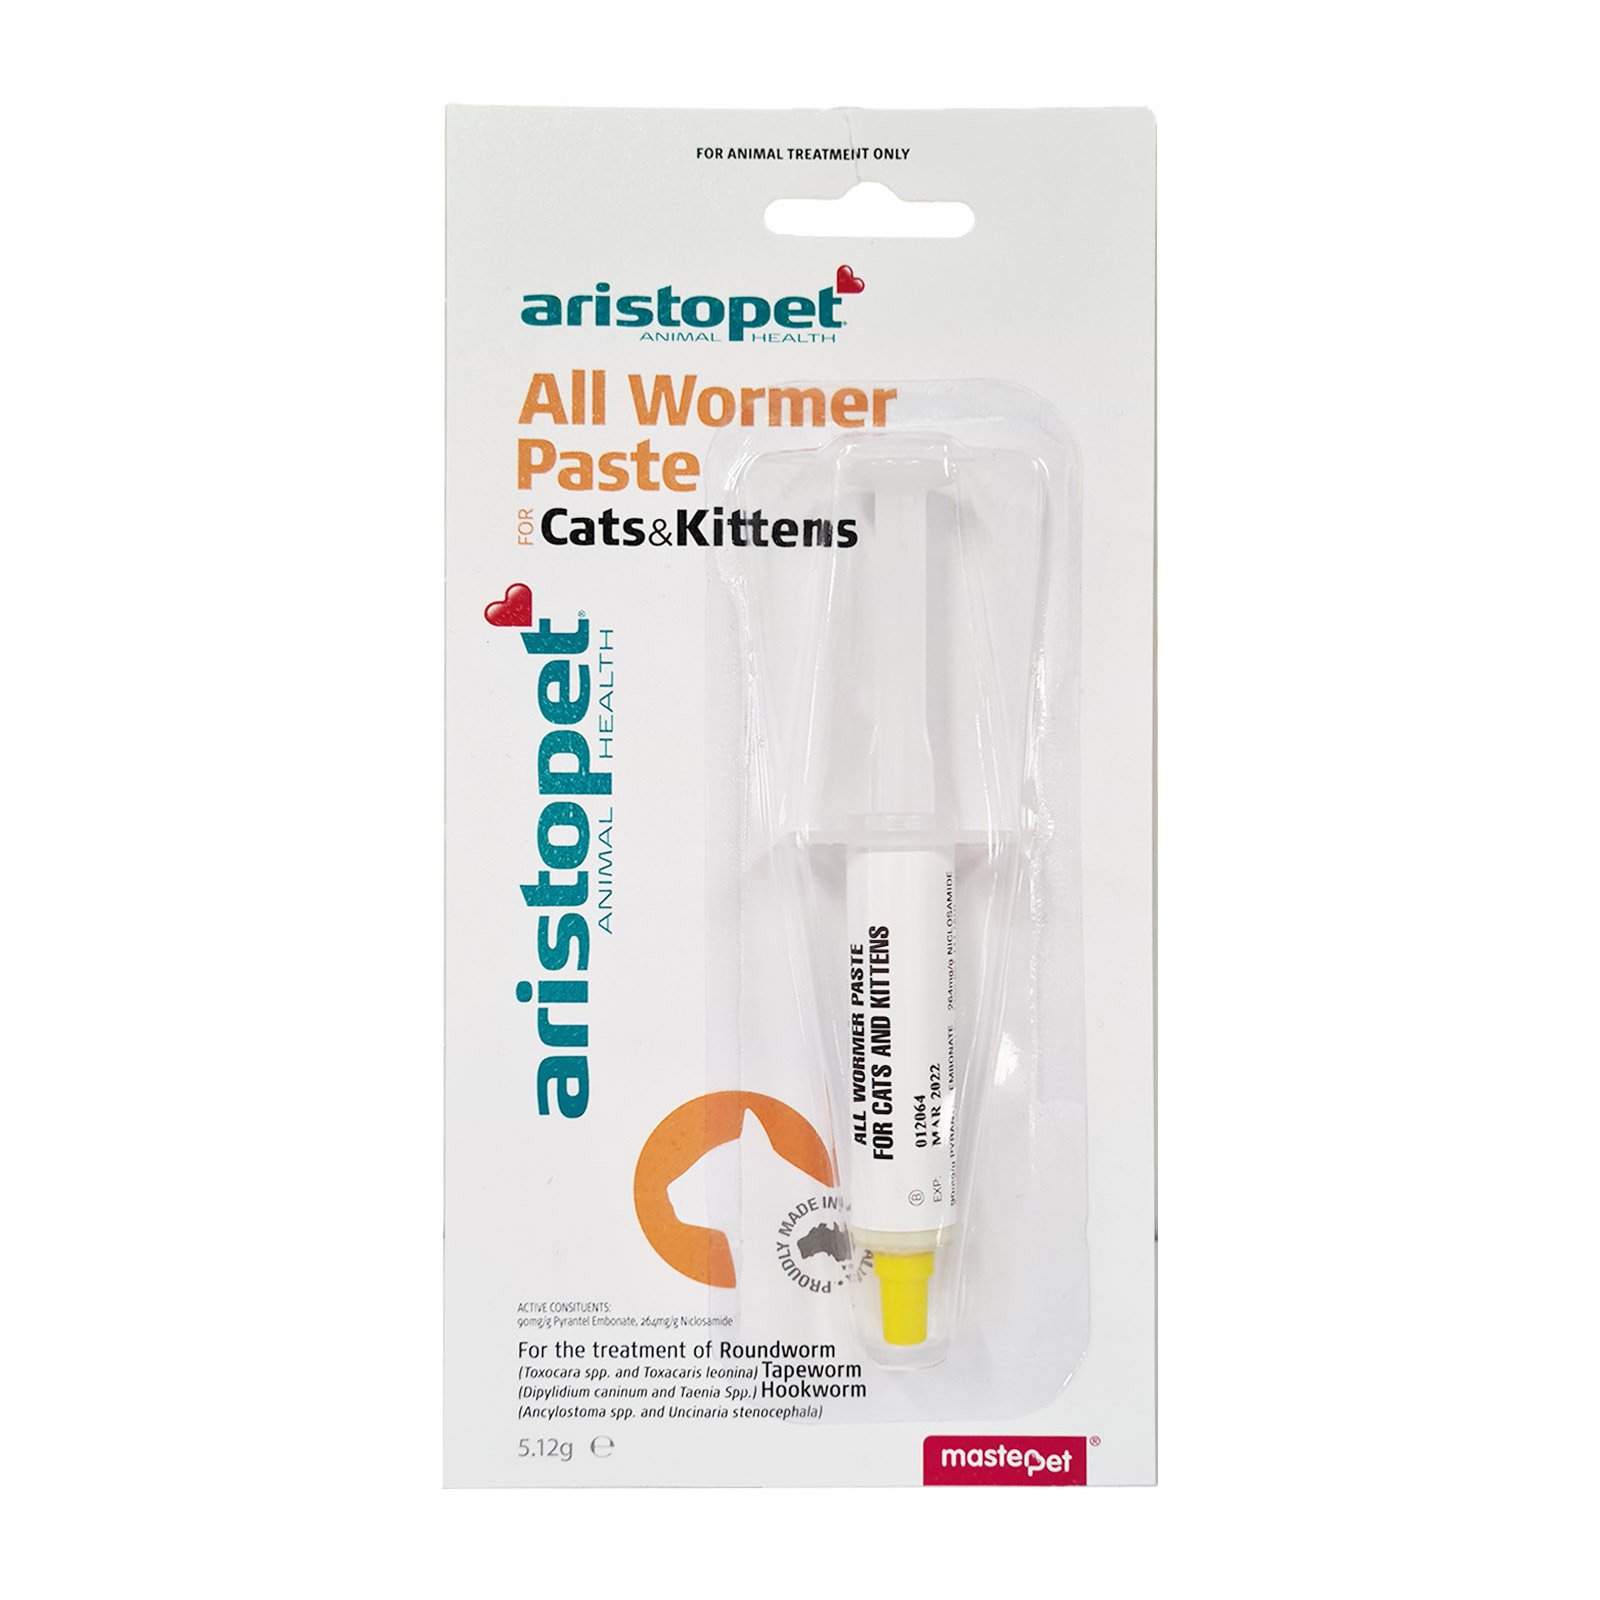 Aristopet Allwormer Paste for Cats & Kittens (5.12g)